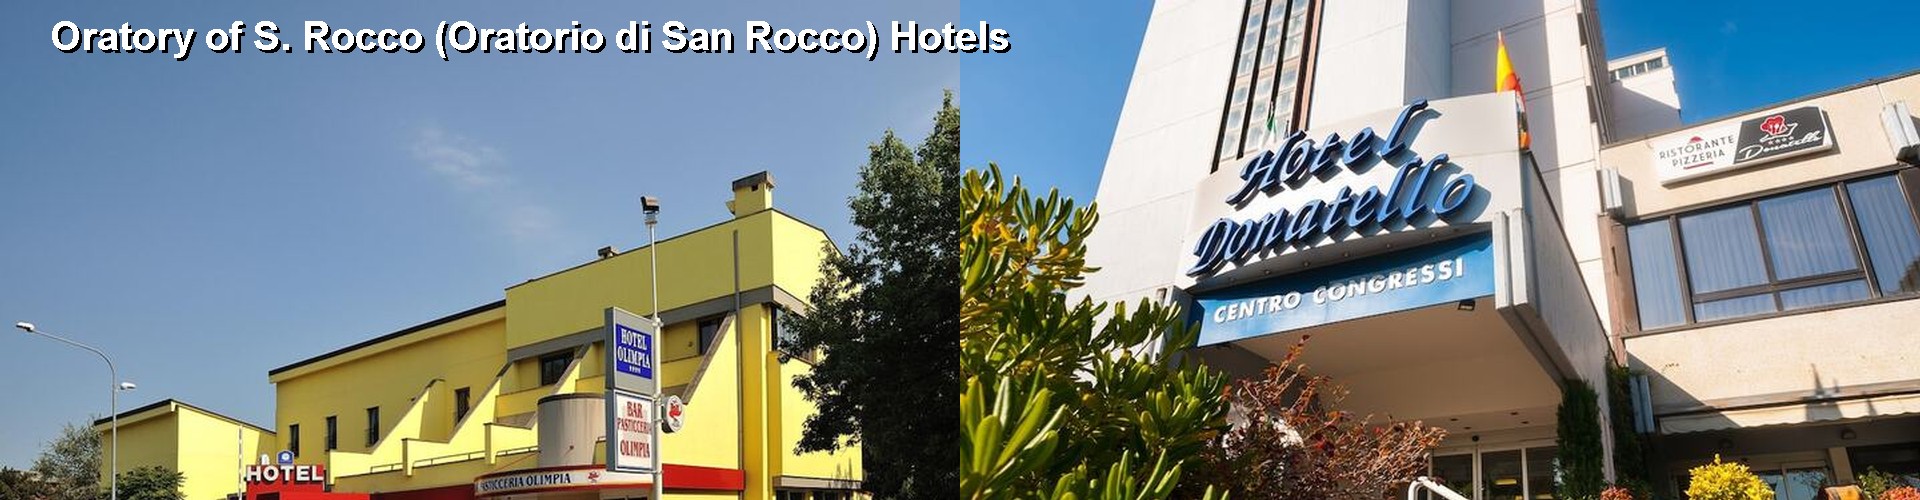 5 Best Hotels near Oratory of S. Rocco (Oratorio di San Rocco)